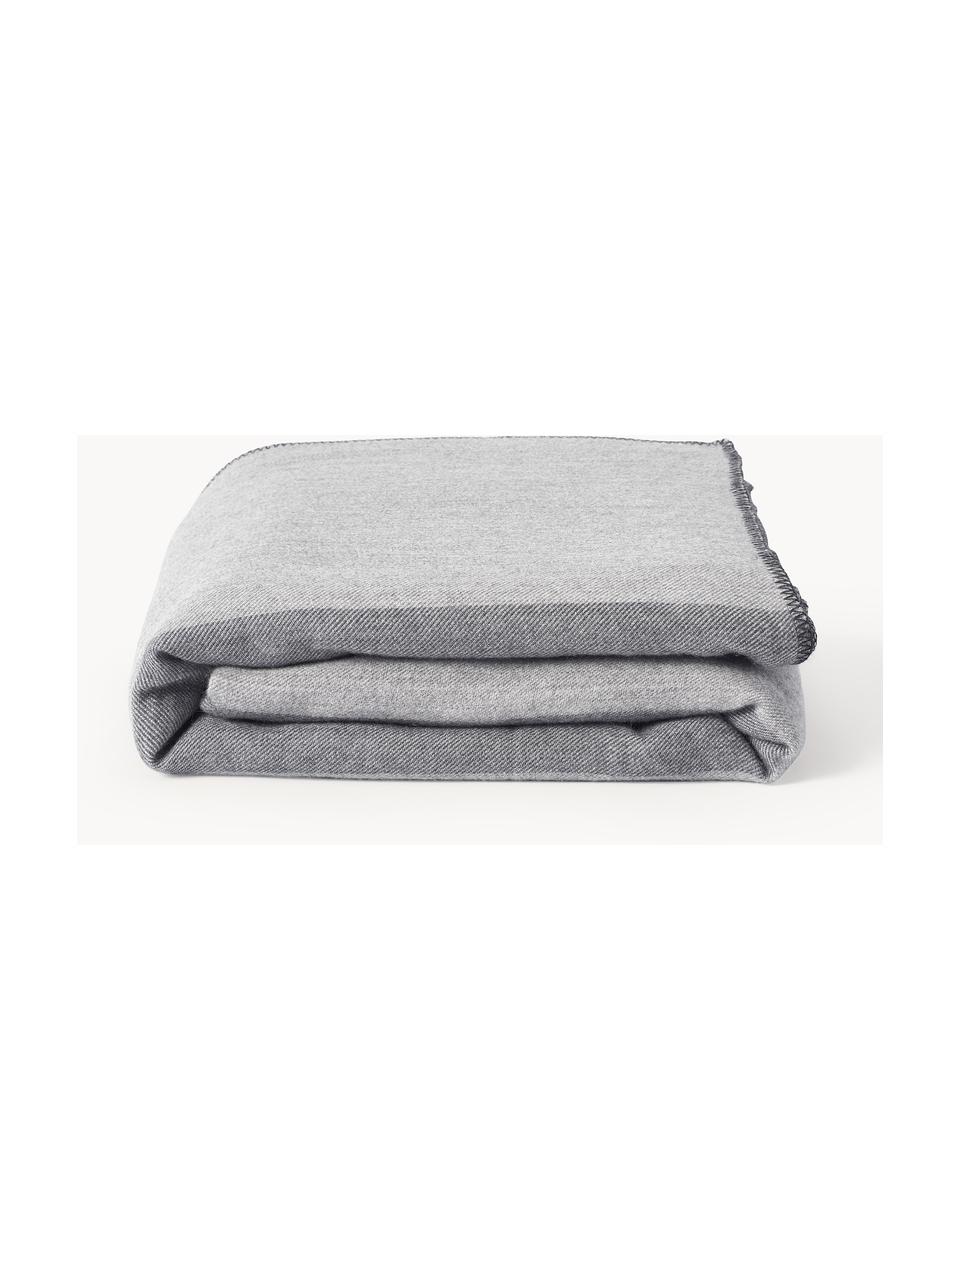 Couverture en laine rayée Ivory, Tons gris, larg 230 x long. 250 cm (pour lits jusqu'à 180 x 200 cm)